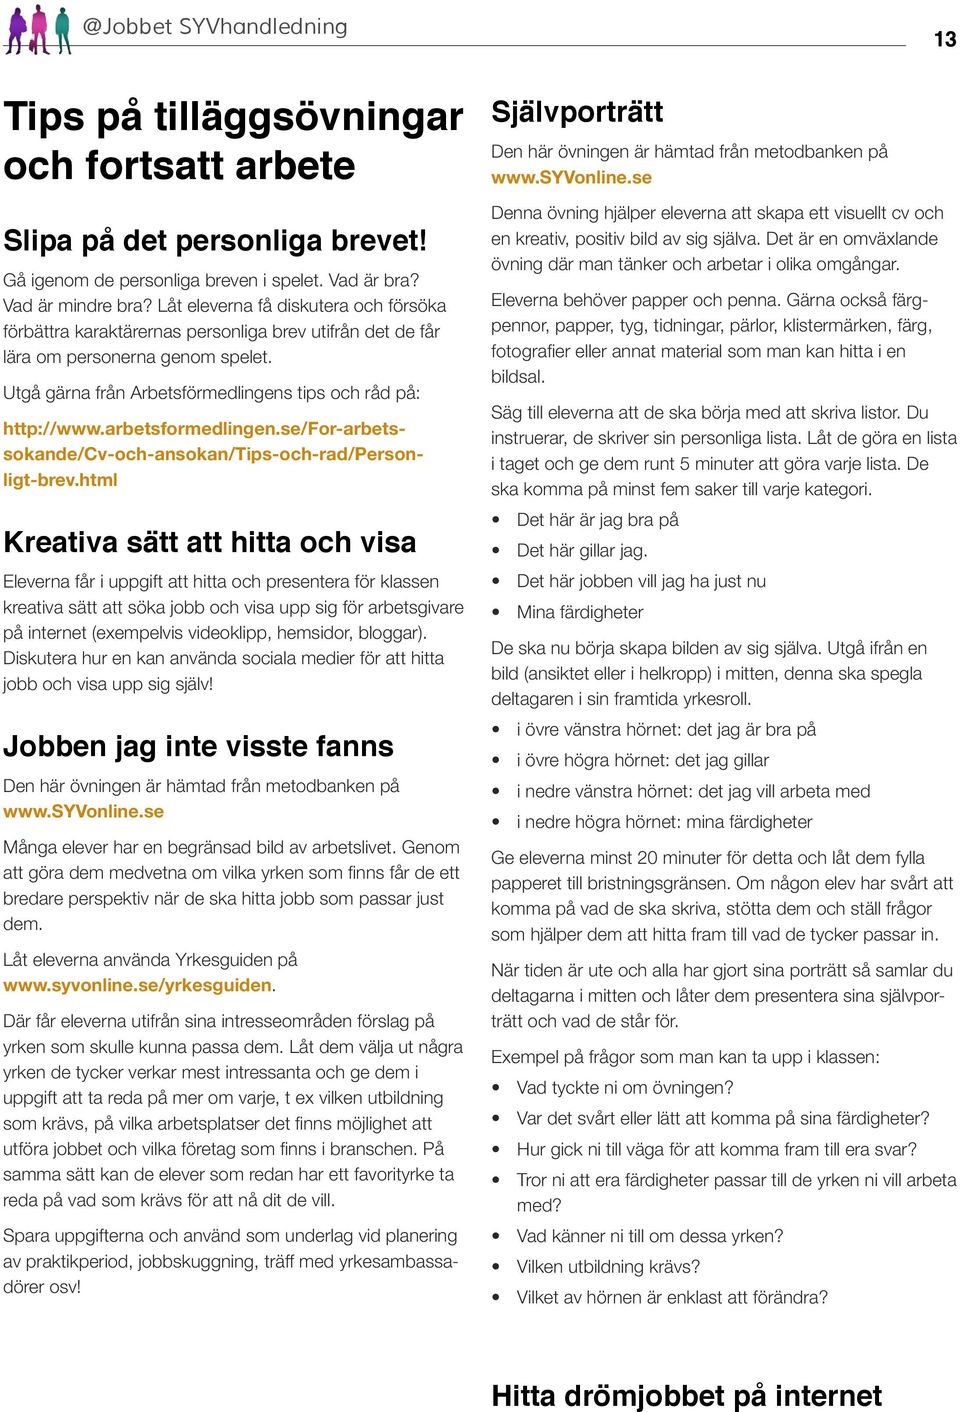 arbetsformedlingen.se/for-arbetssokande/cv-och-ansokan/tips-och-rad/personligt-brev.